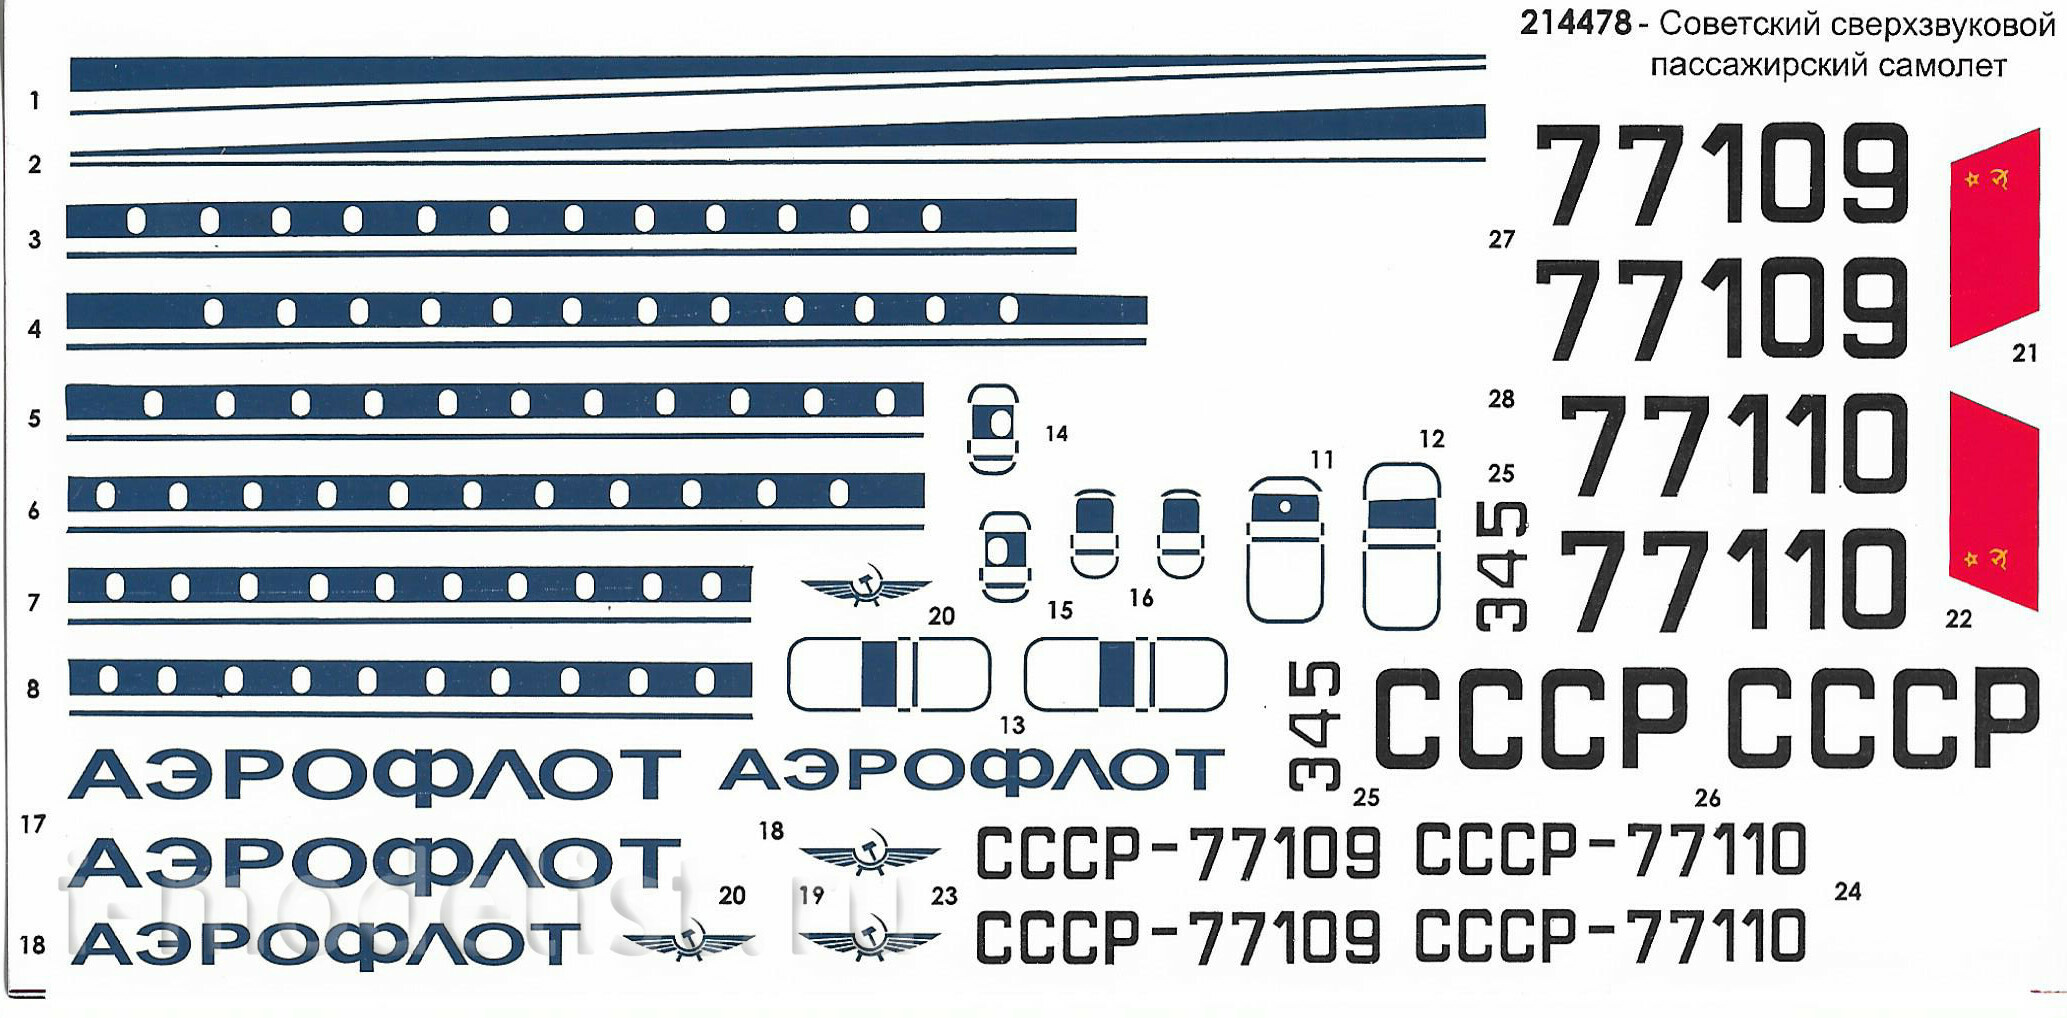 214478 Моделист 1/144 Советский сверхзвуковой пассажирский самолёт Т-у-144 КБ Туполева.СССР. 1968 год.